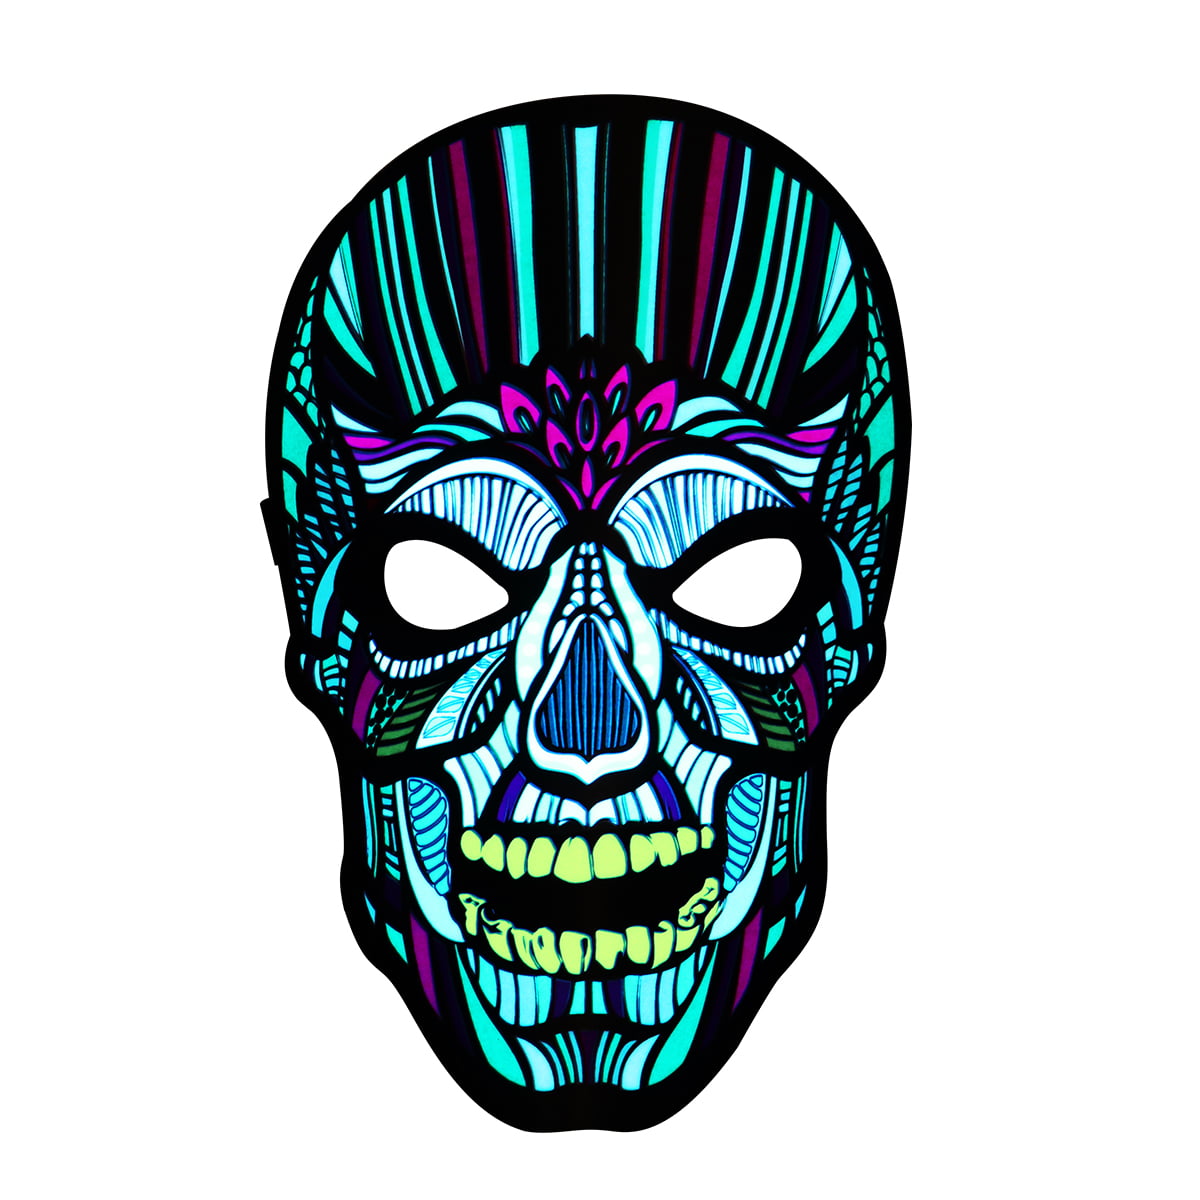 Uyuke LED Music Mask Sound Reactive Mask Party Glow Mask Flashing Luminous Mask for Music Party Festival Cosplay 